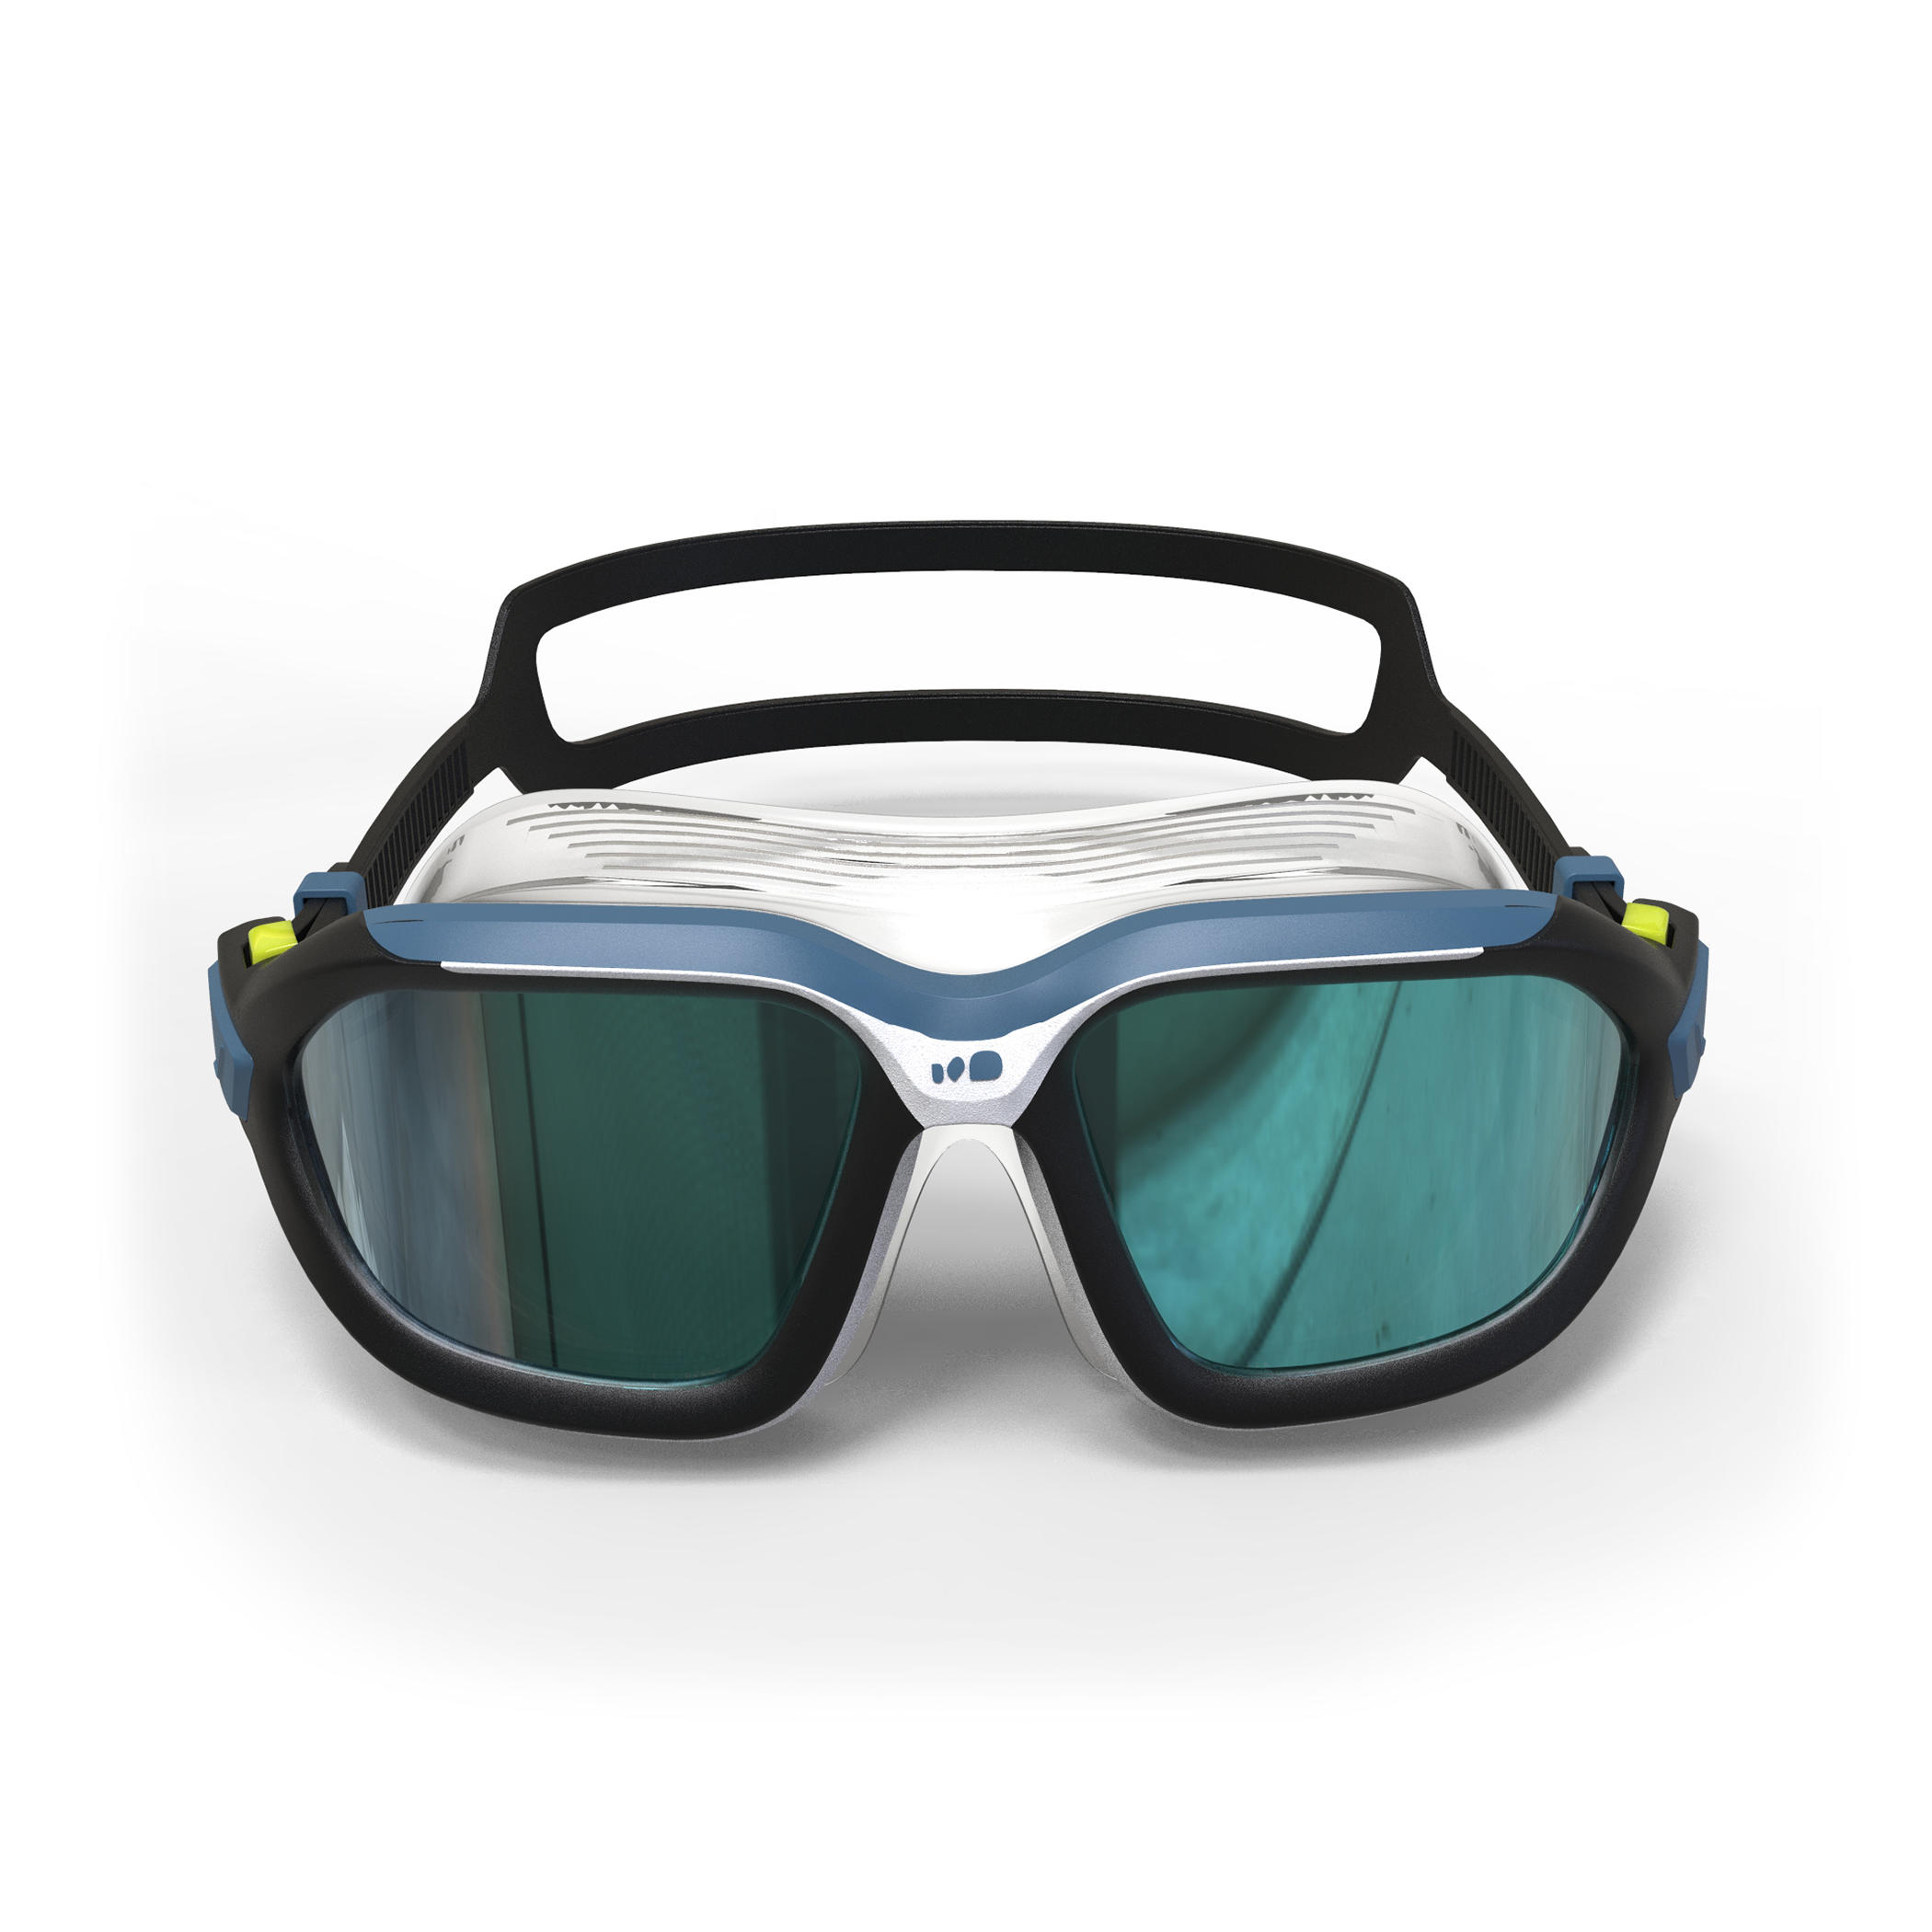 Masque de piscine verres miroirs taille L - Active 500 bleu/noir - NABAIJI